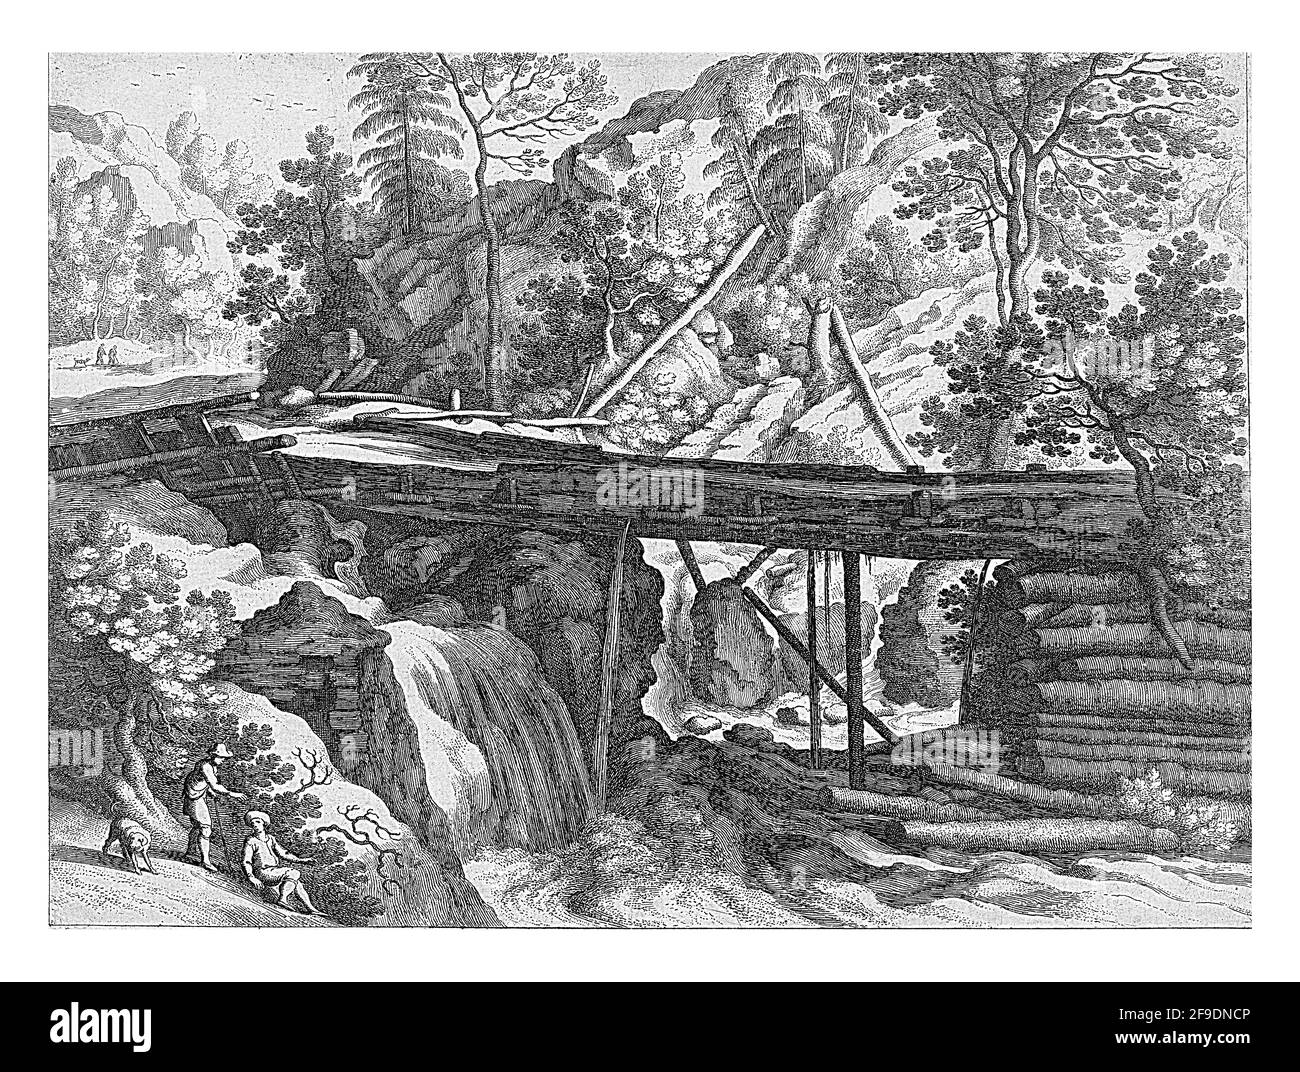 Ein hölzernes Aquädukt über einem Bach in einer Berglandschaft. Links vom Aquädukt ein Wasserfall, links unten zwei Männer und ein Hund. Drucken aus einer Serie o Stockfoto